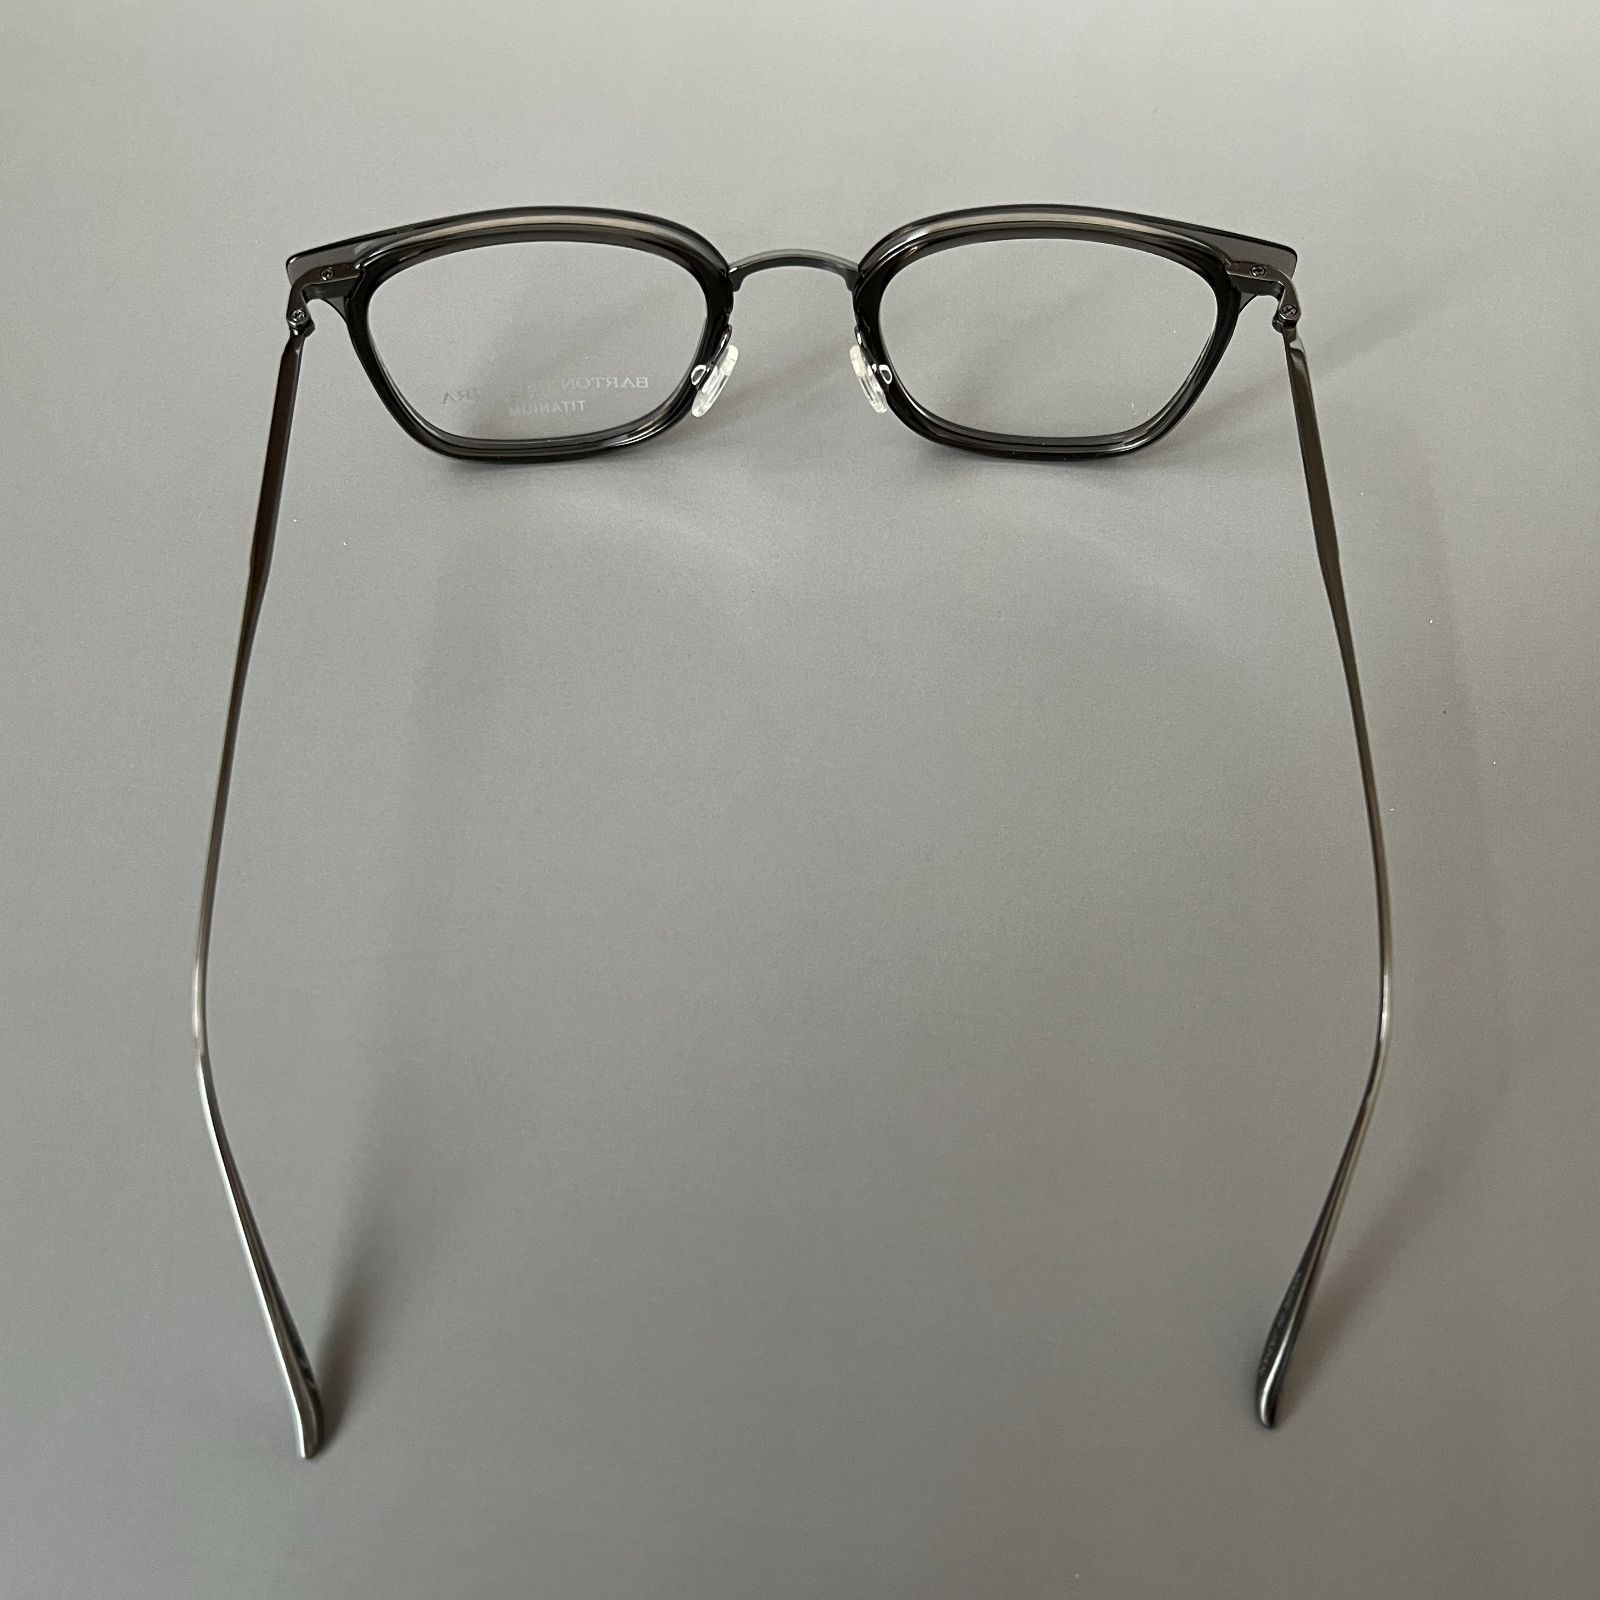 日米首脳メガネ バートンペレイラ ウェリントン ブラック シルバー 日本製 チタン サングラス/メガネ